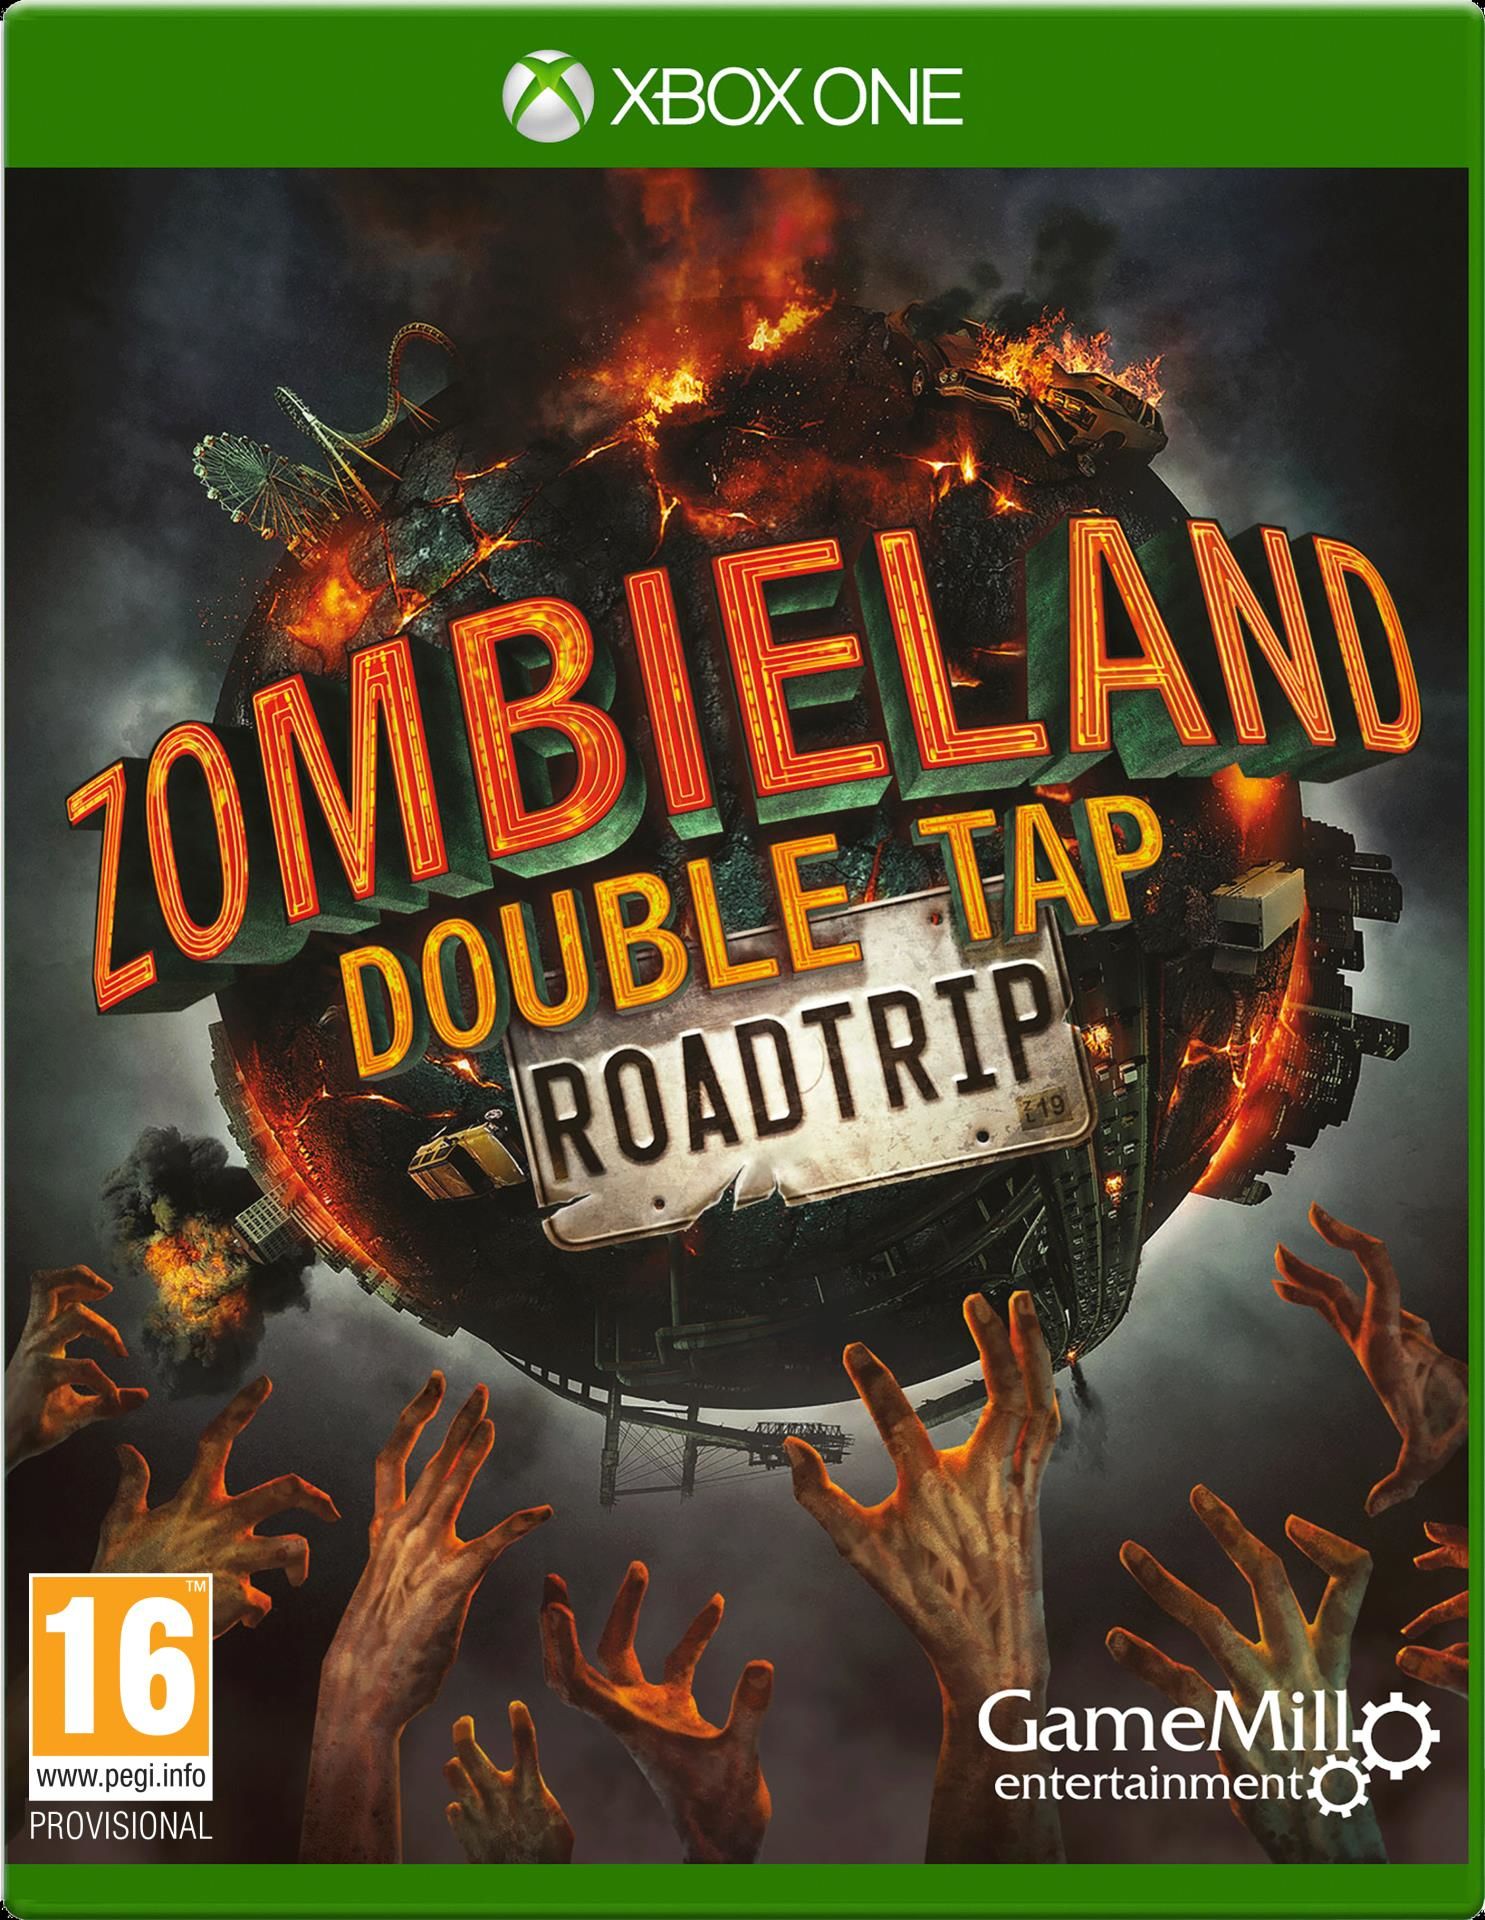 Zombieland Double Tap Roadtrip